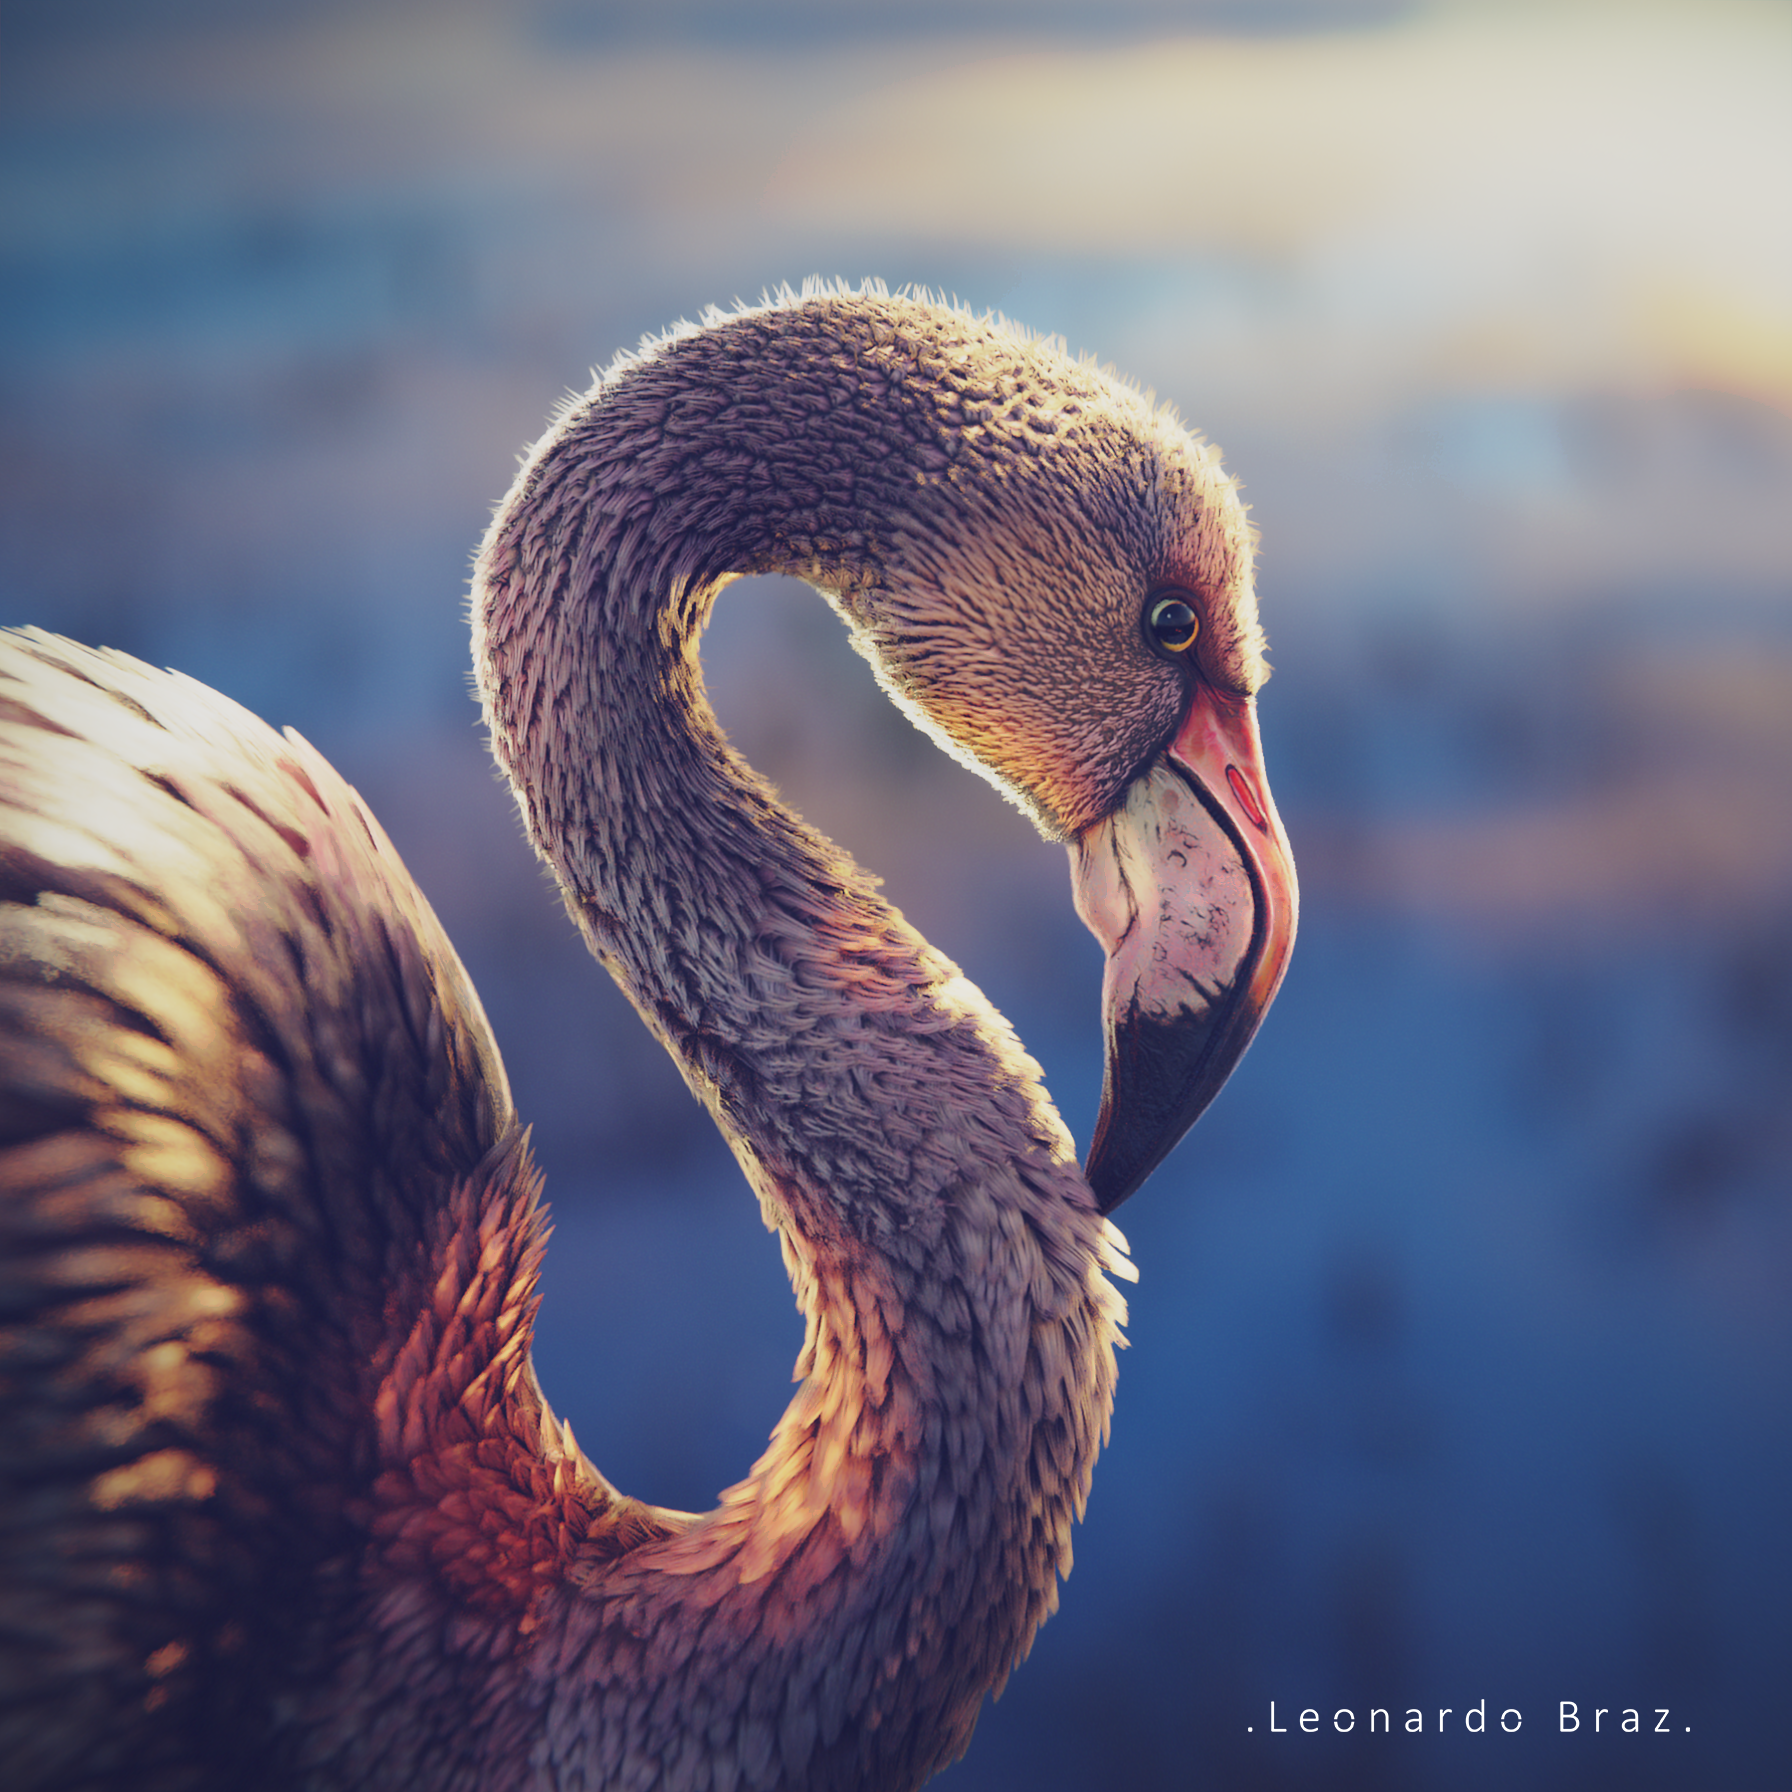 d blender Flamingo Leonardo Braz